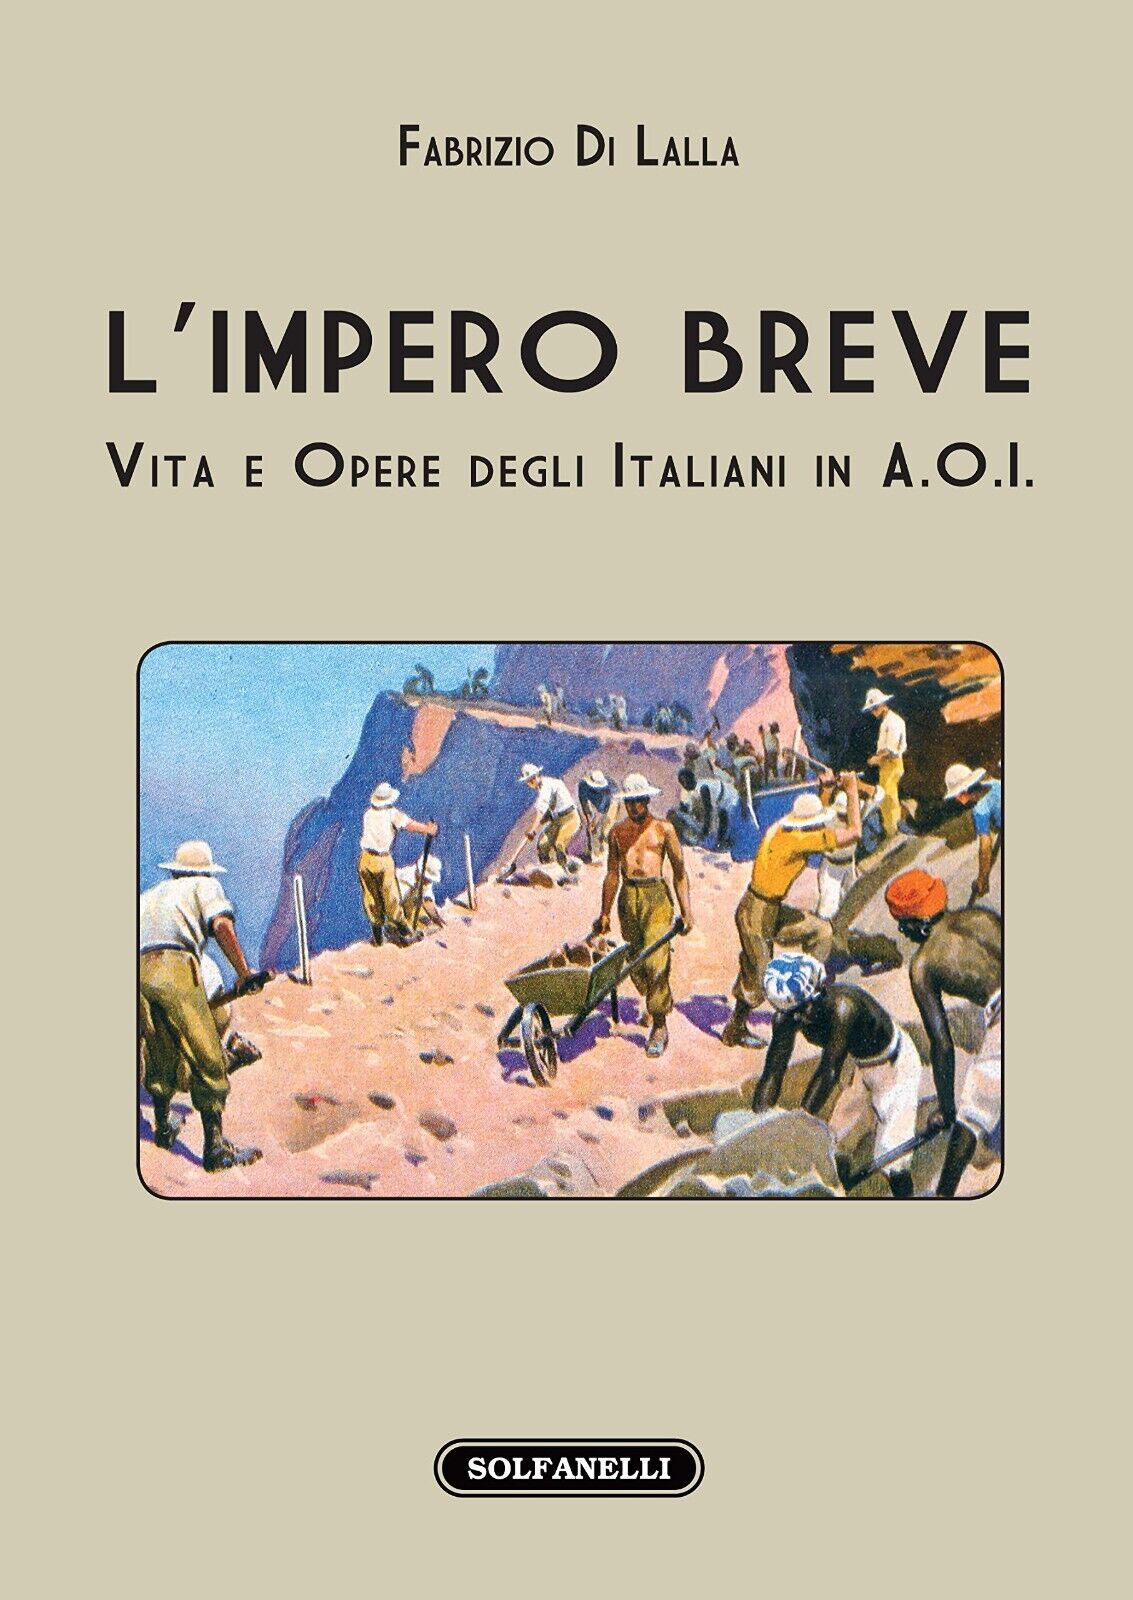  L'impero breve vita e opere degli italiani in A.O.I. di Fabrizio Di Lalla, 20